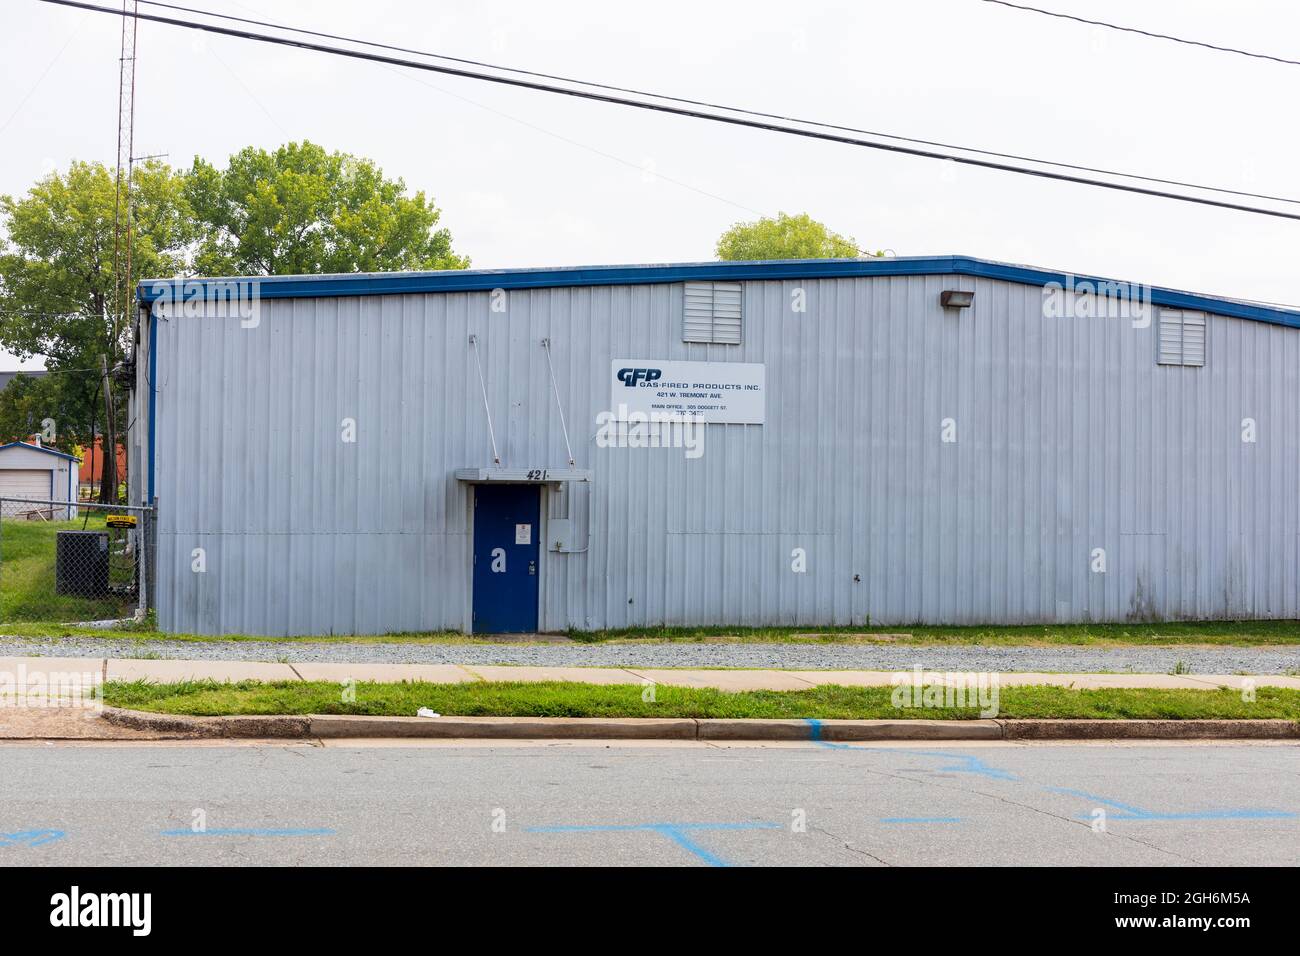 CHARLOTTE, NC, USA-25 JULY 2021: Ein Stahlgebäude mit einem Schild, das GFP Gas-Fired Products, Inc. Kennzeichnet Stockfoto